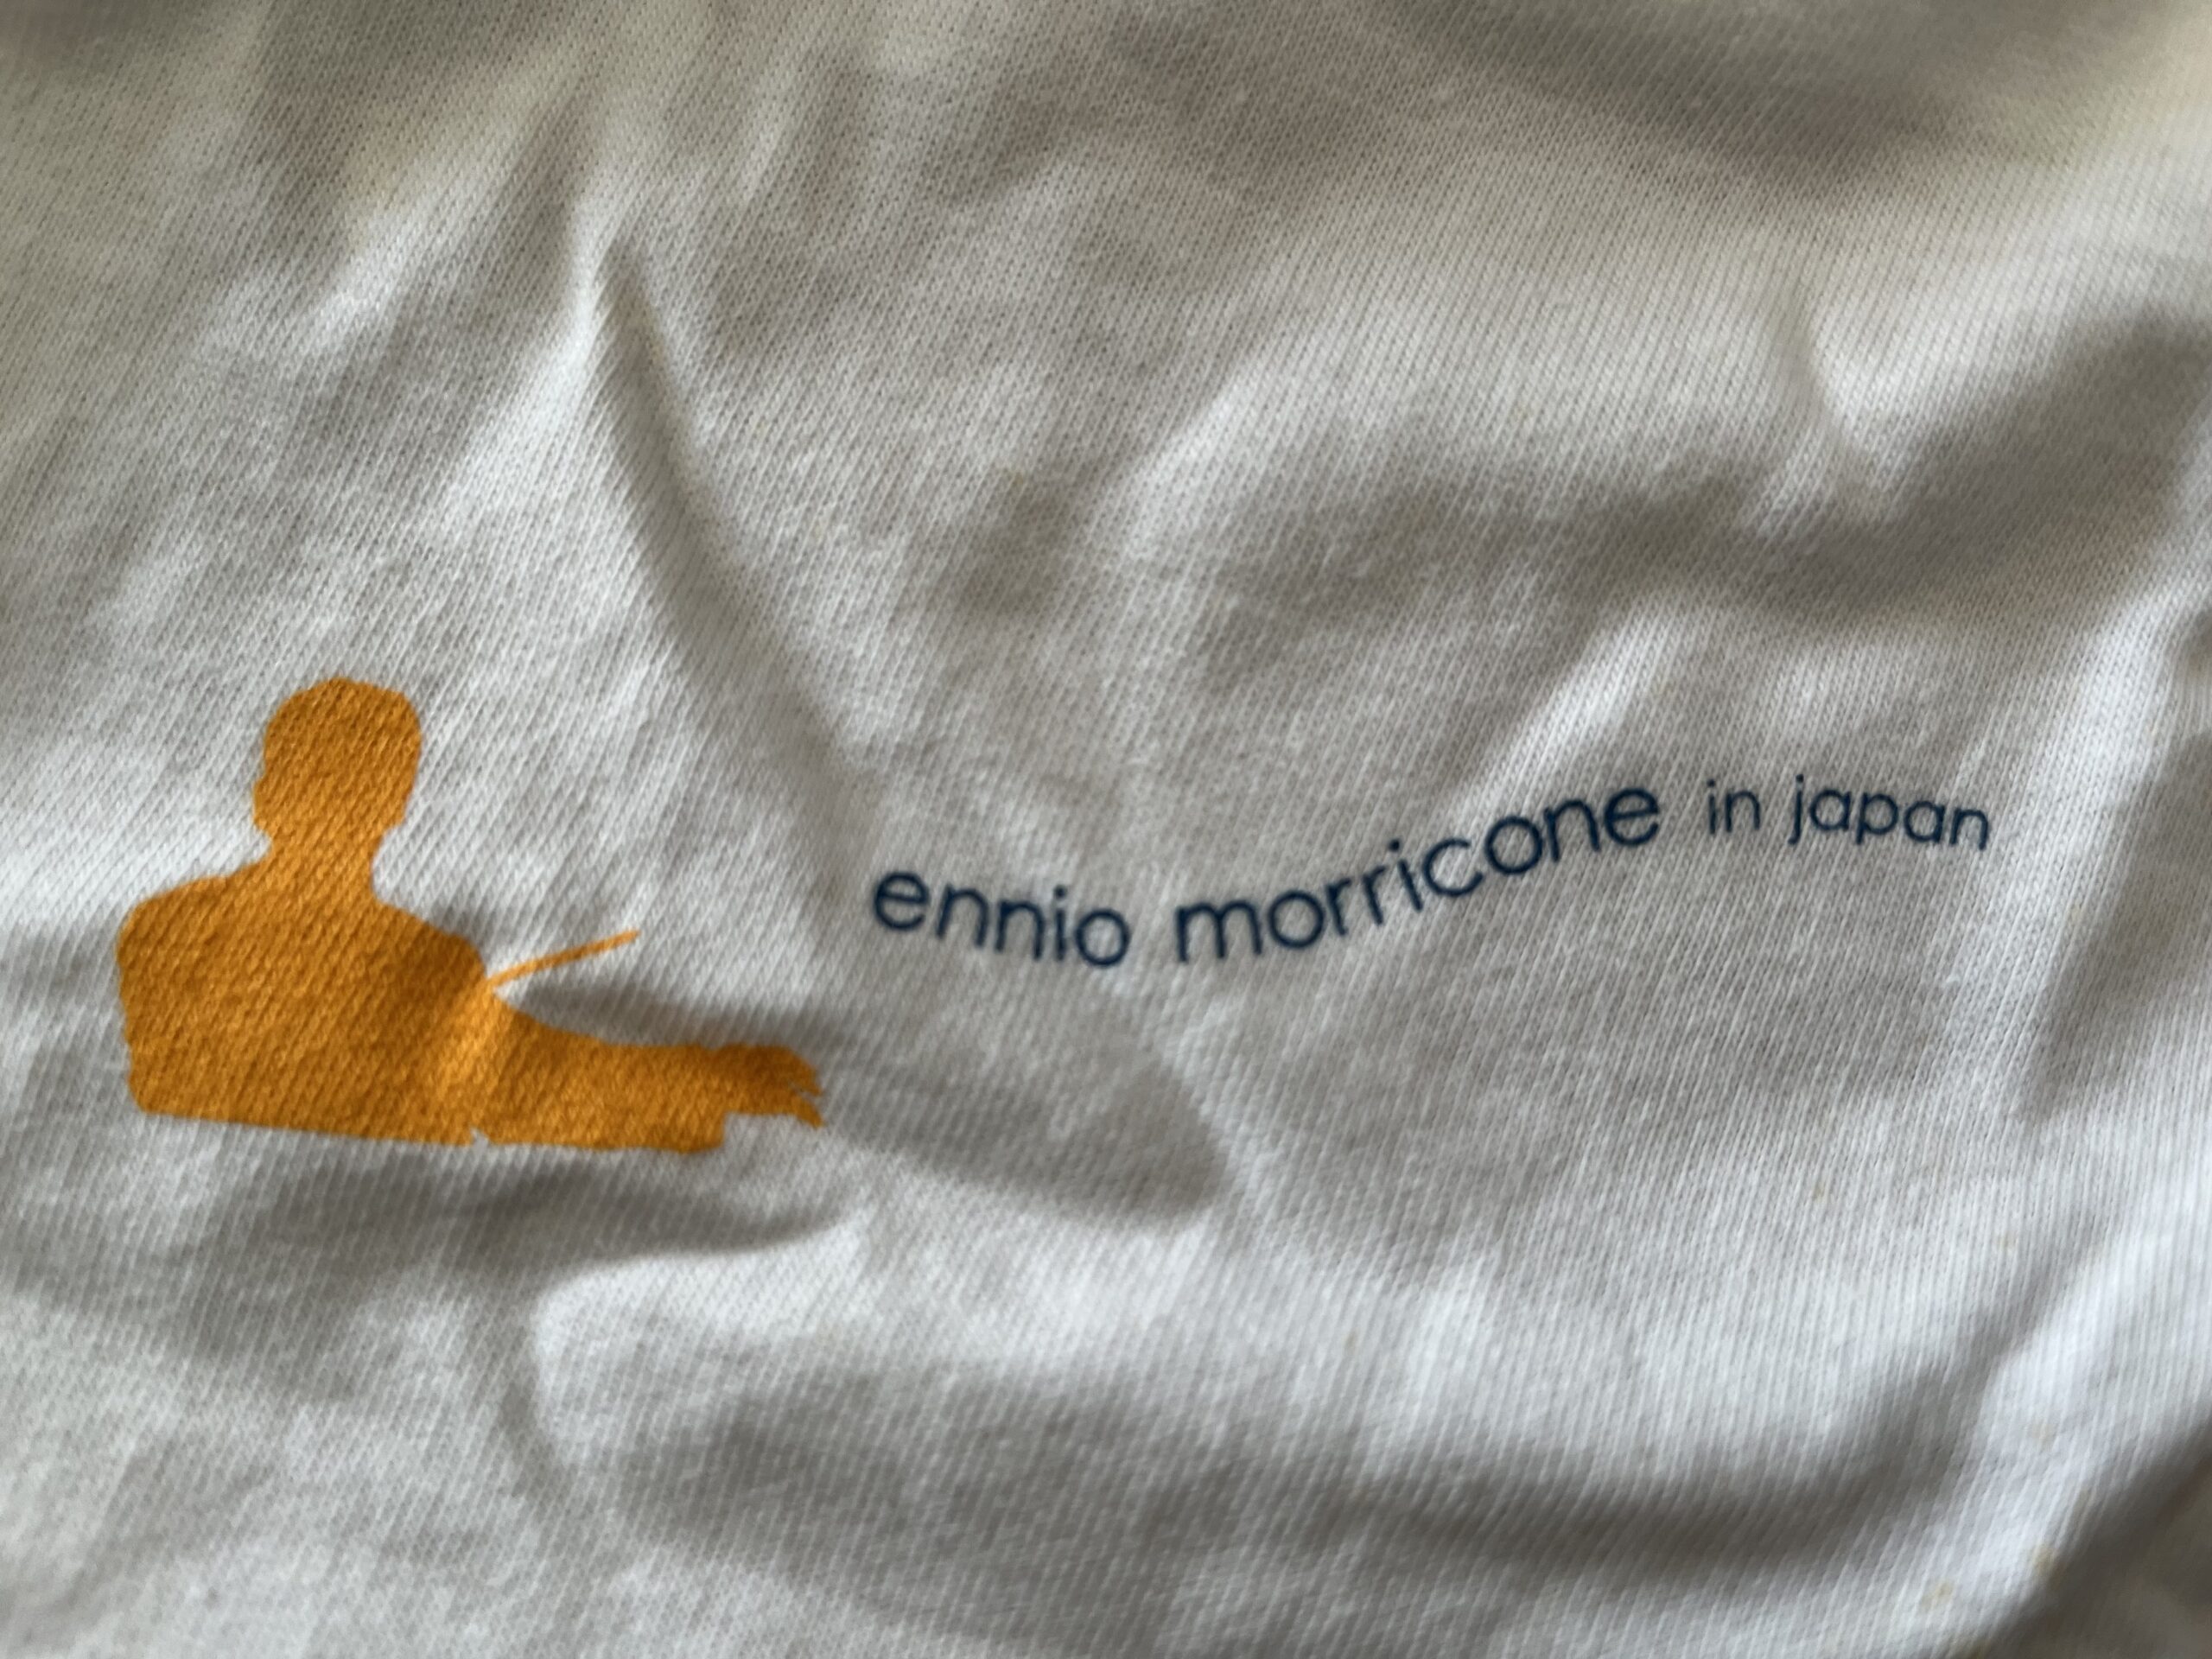 Ennio Morricone in Japan (2004)